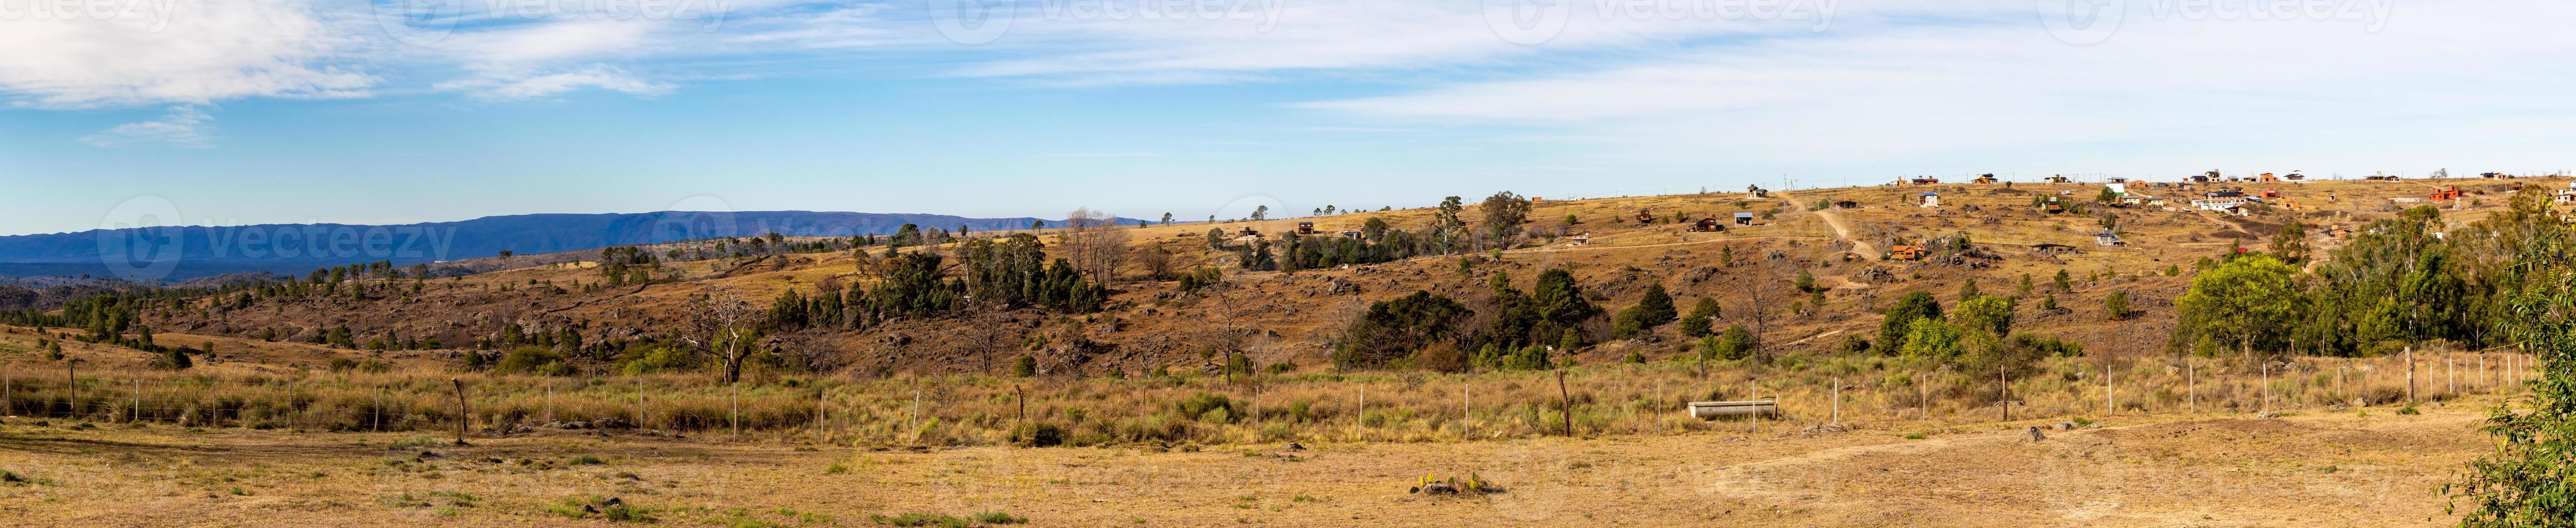 Panorama- Aussicht von Villa Yacanto, Provinz von Cordoba foto